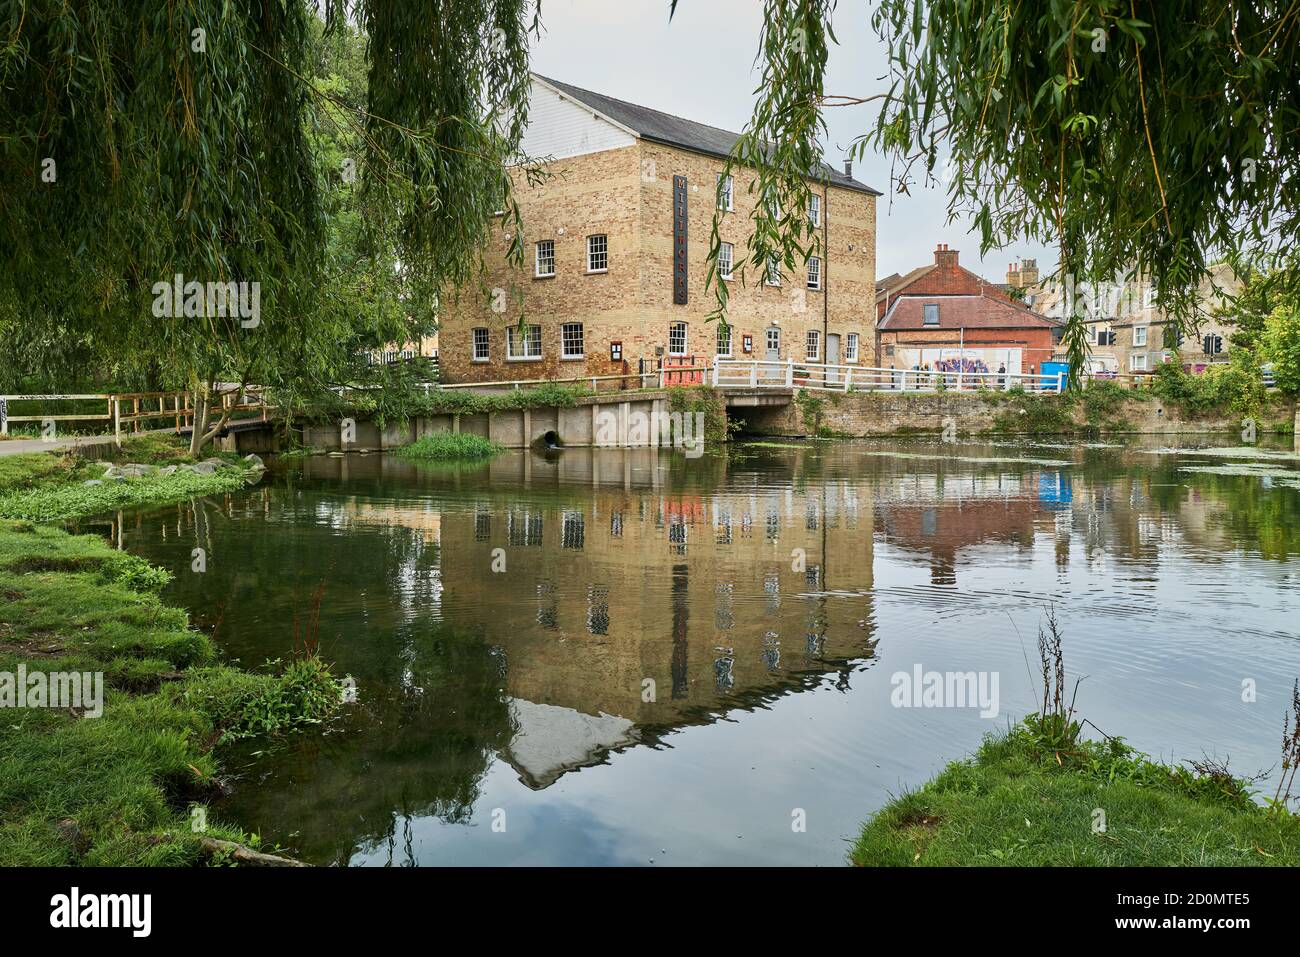 'Millworks', eine ehemalige Mühle am Ufer des Flusses Cam in Mill Pond, Cambridge, England, wurde heute zu einem Restaurant und einer Brasserie umgebaut. Stockfoto